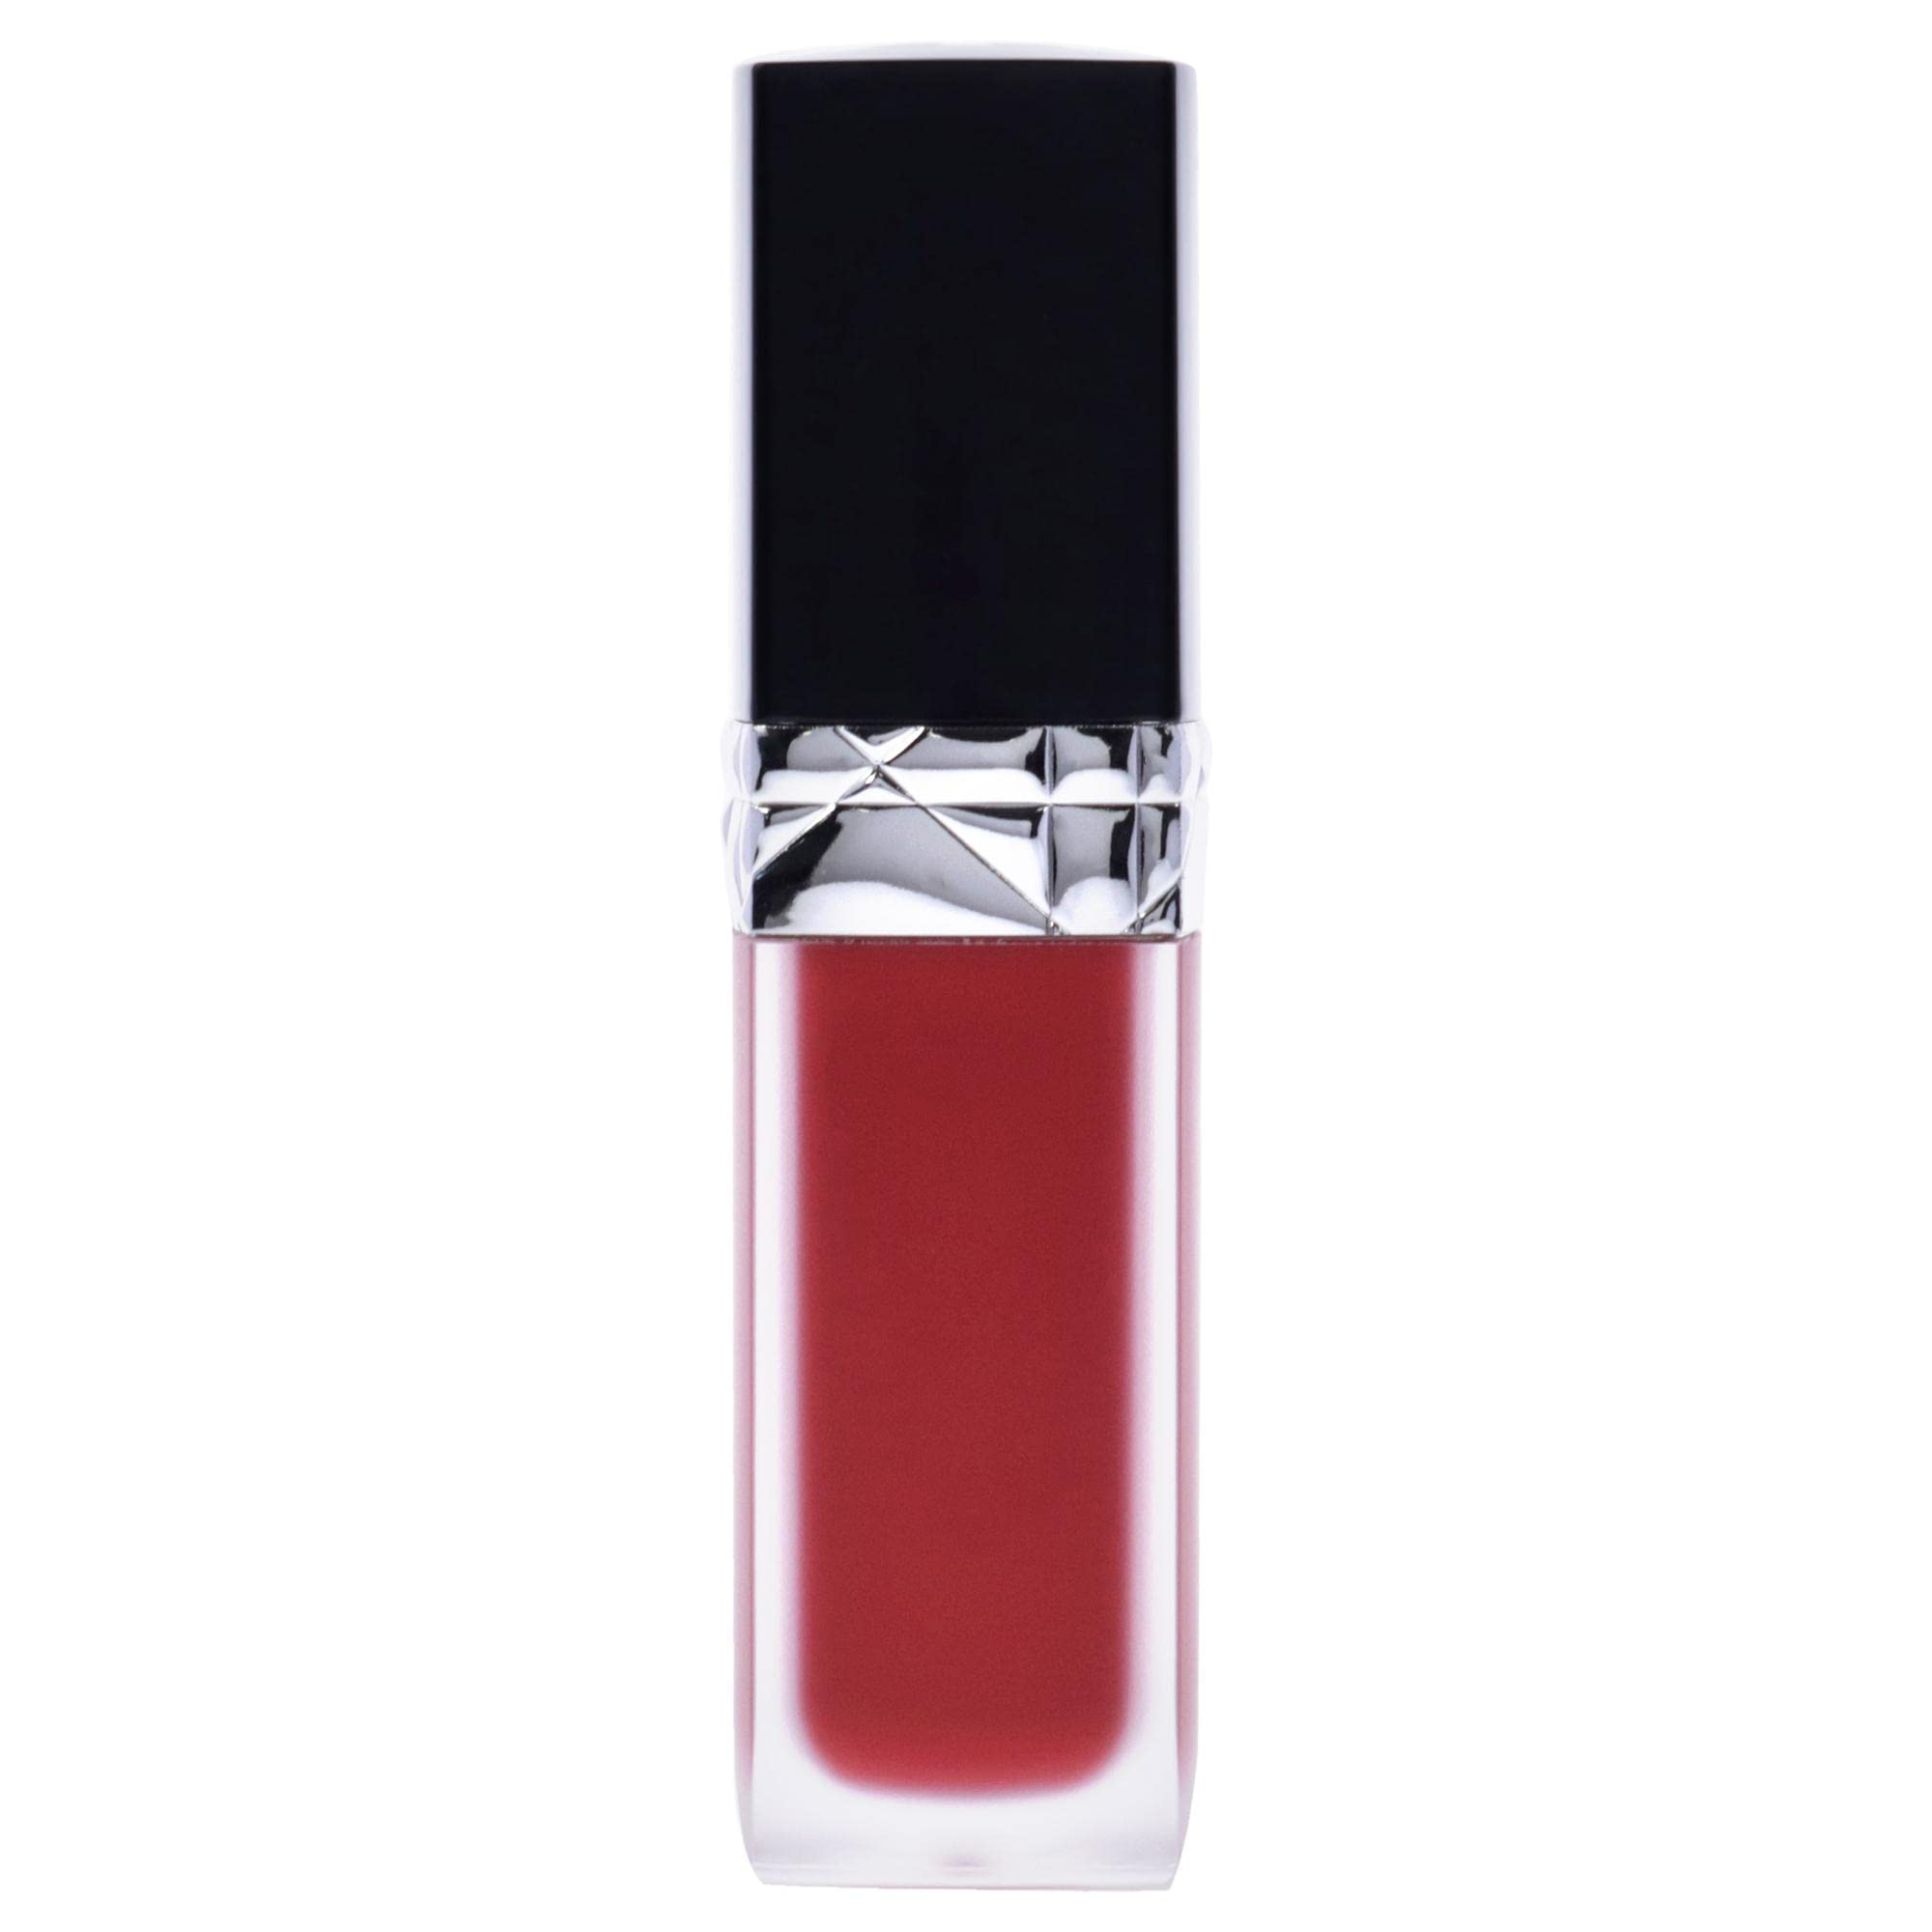 Vỉ son Dior Rouge Liquid chất kem lì mịn với 4 mã màu tuyệt đẹp 999 979  614 162